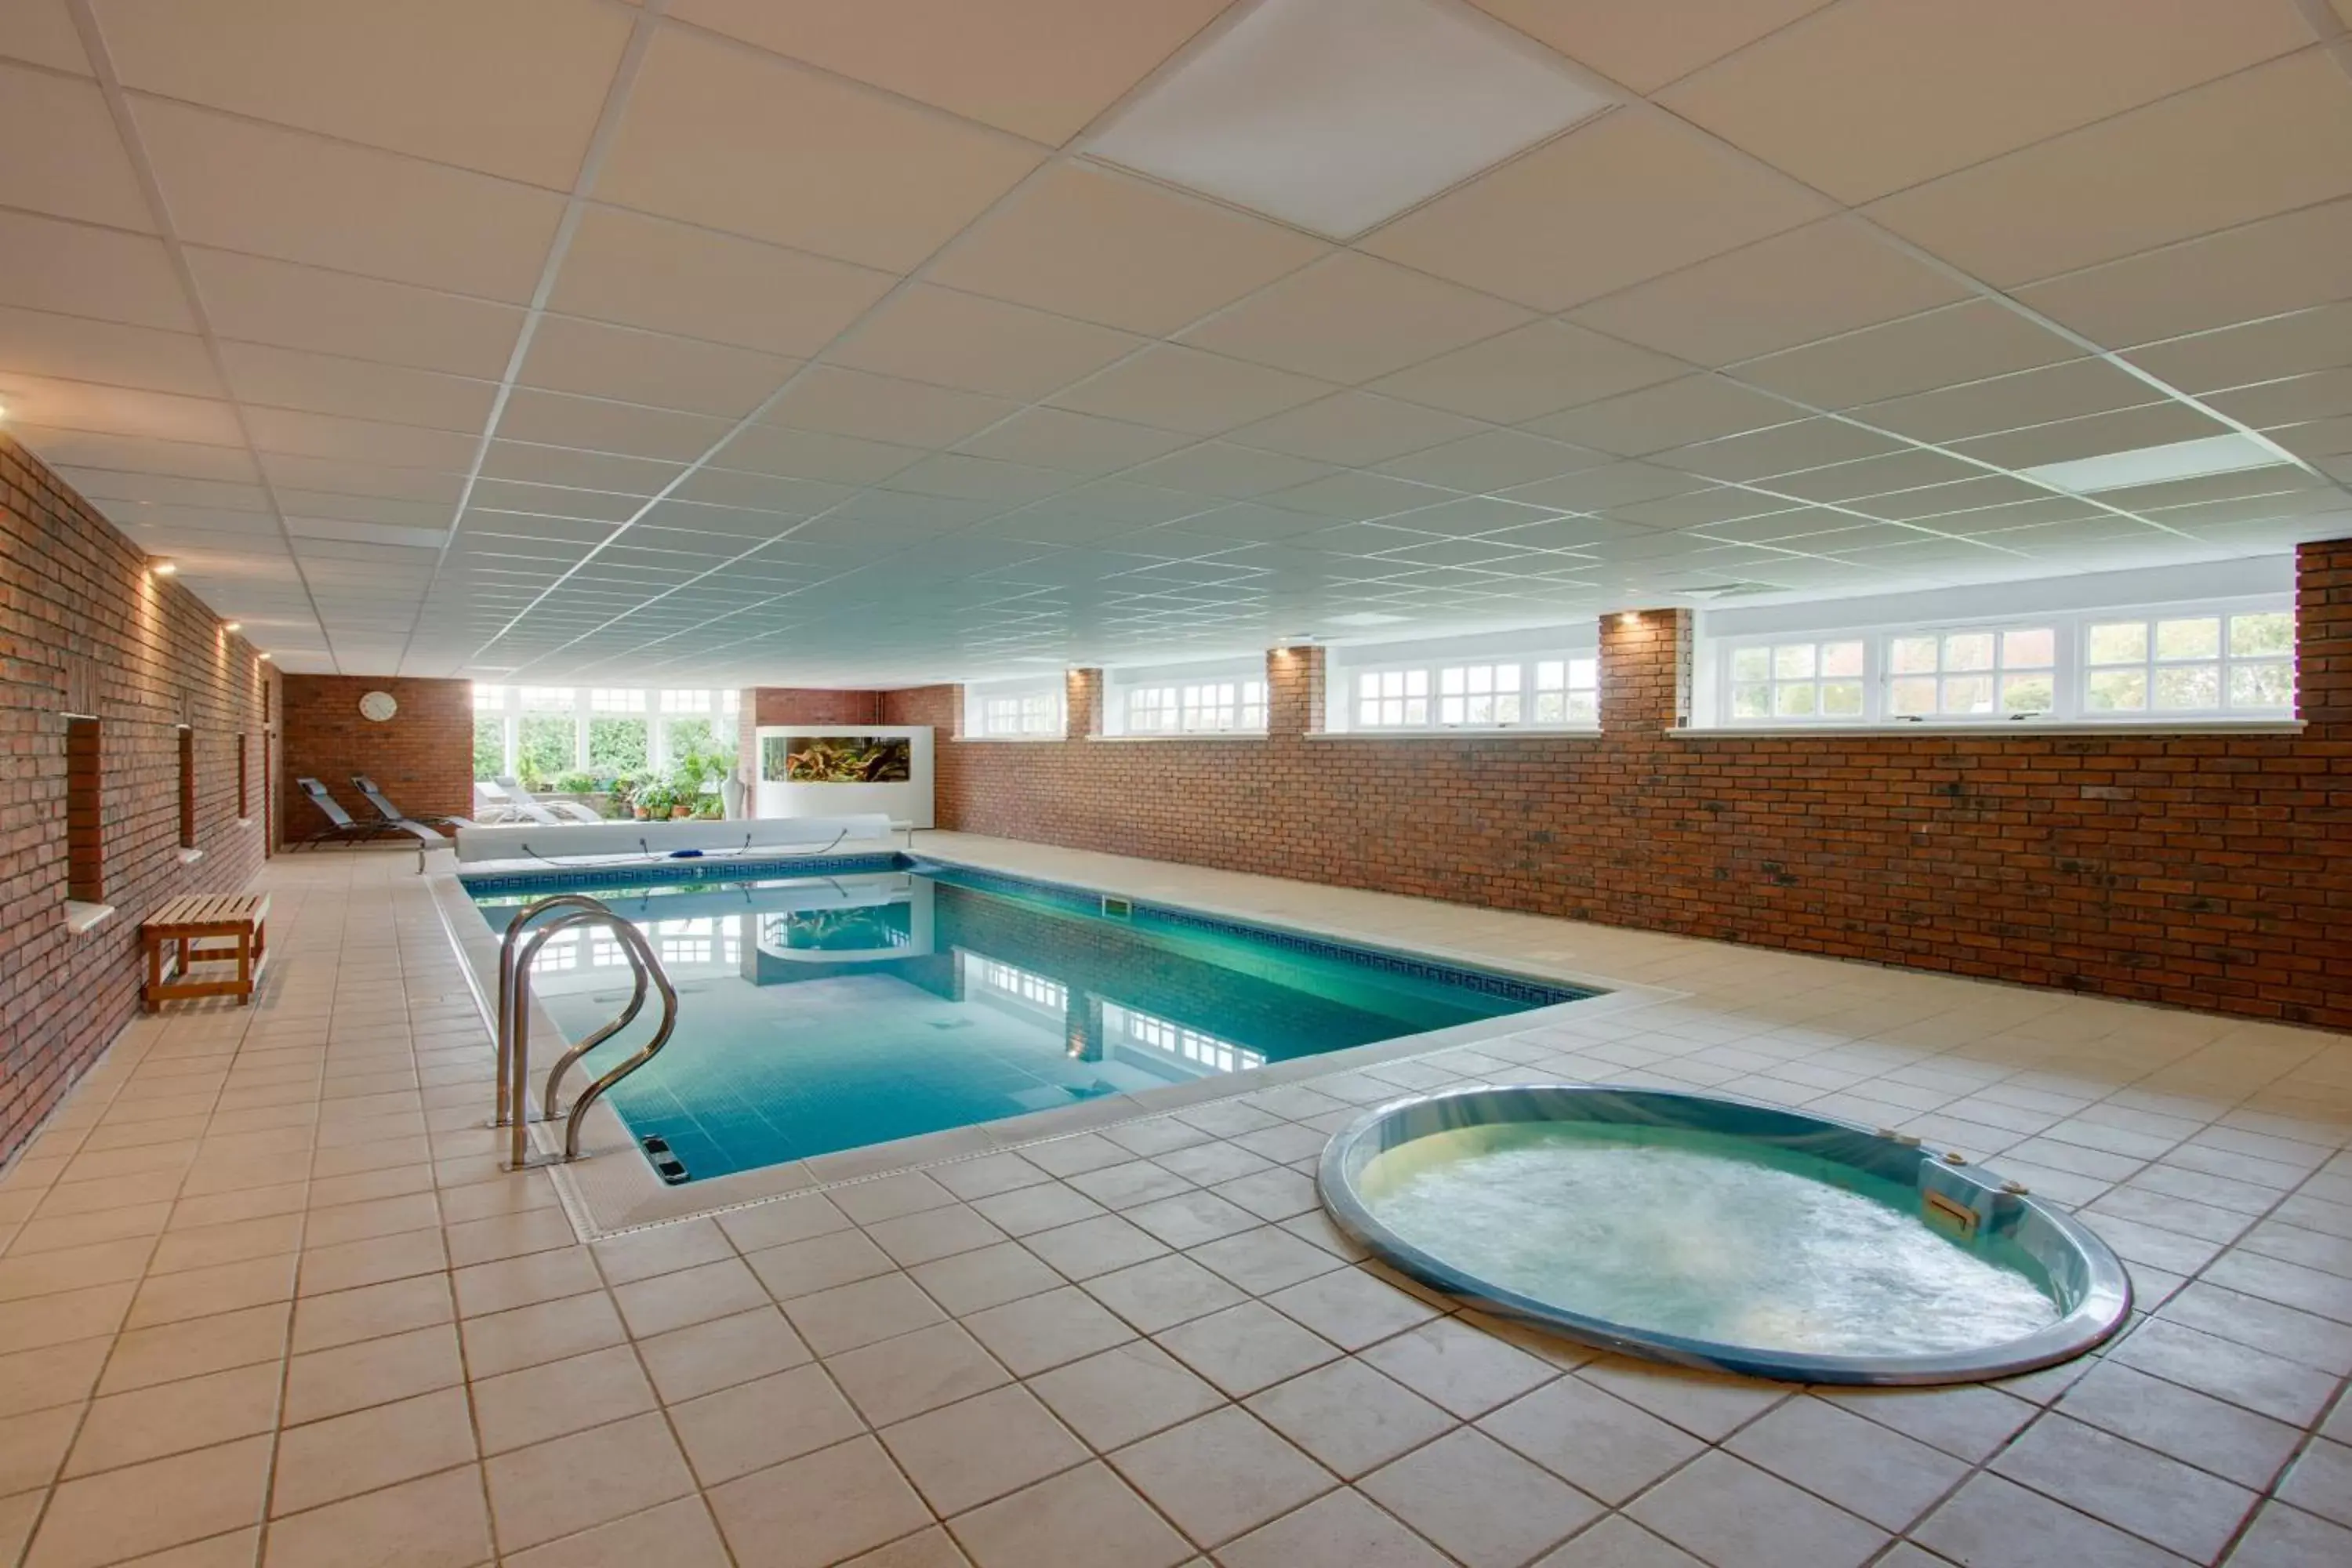 Hot Tub, Swimming Pool in Home Farm B&B - Poppy Room